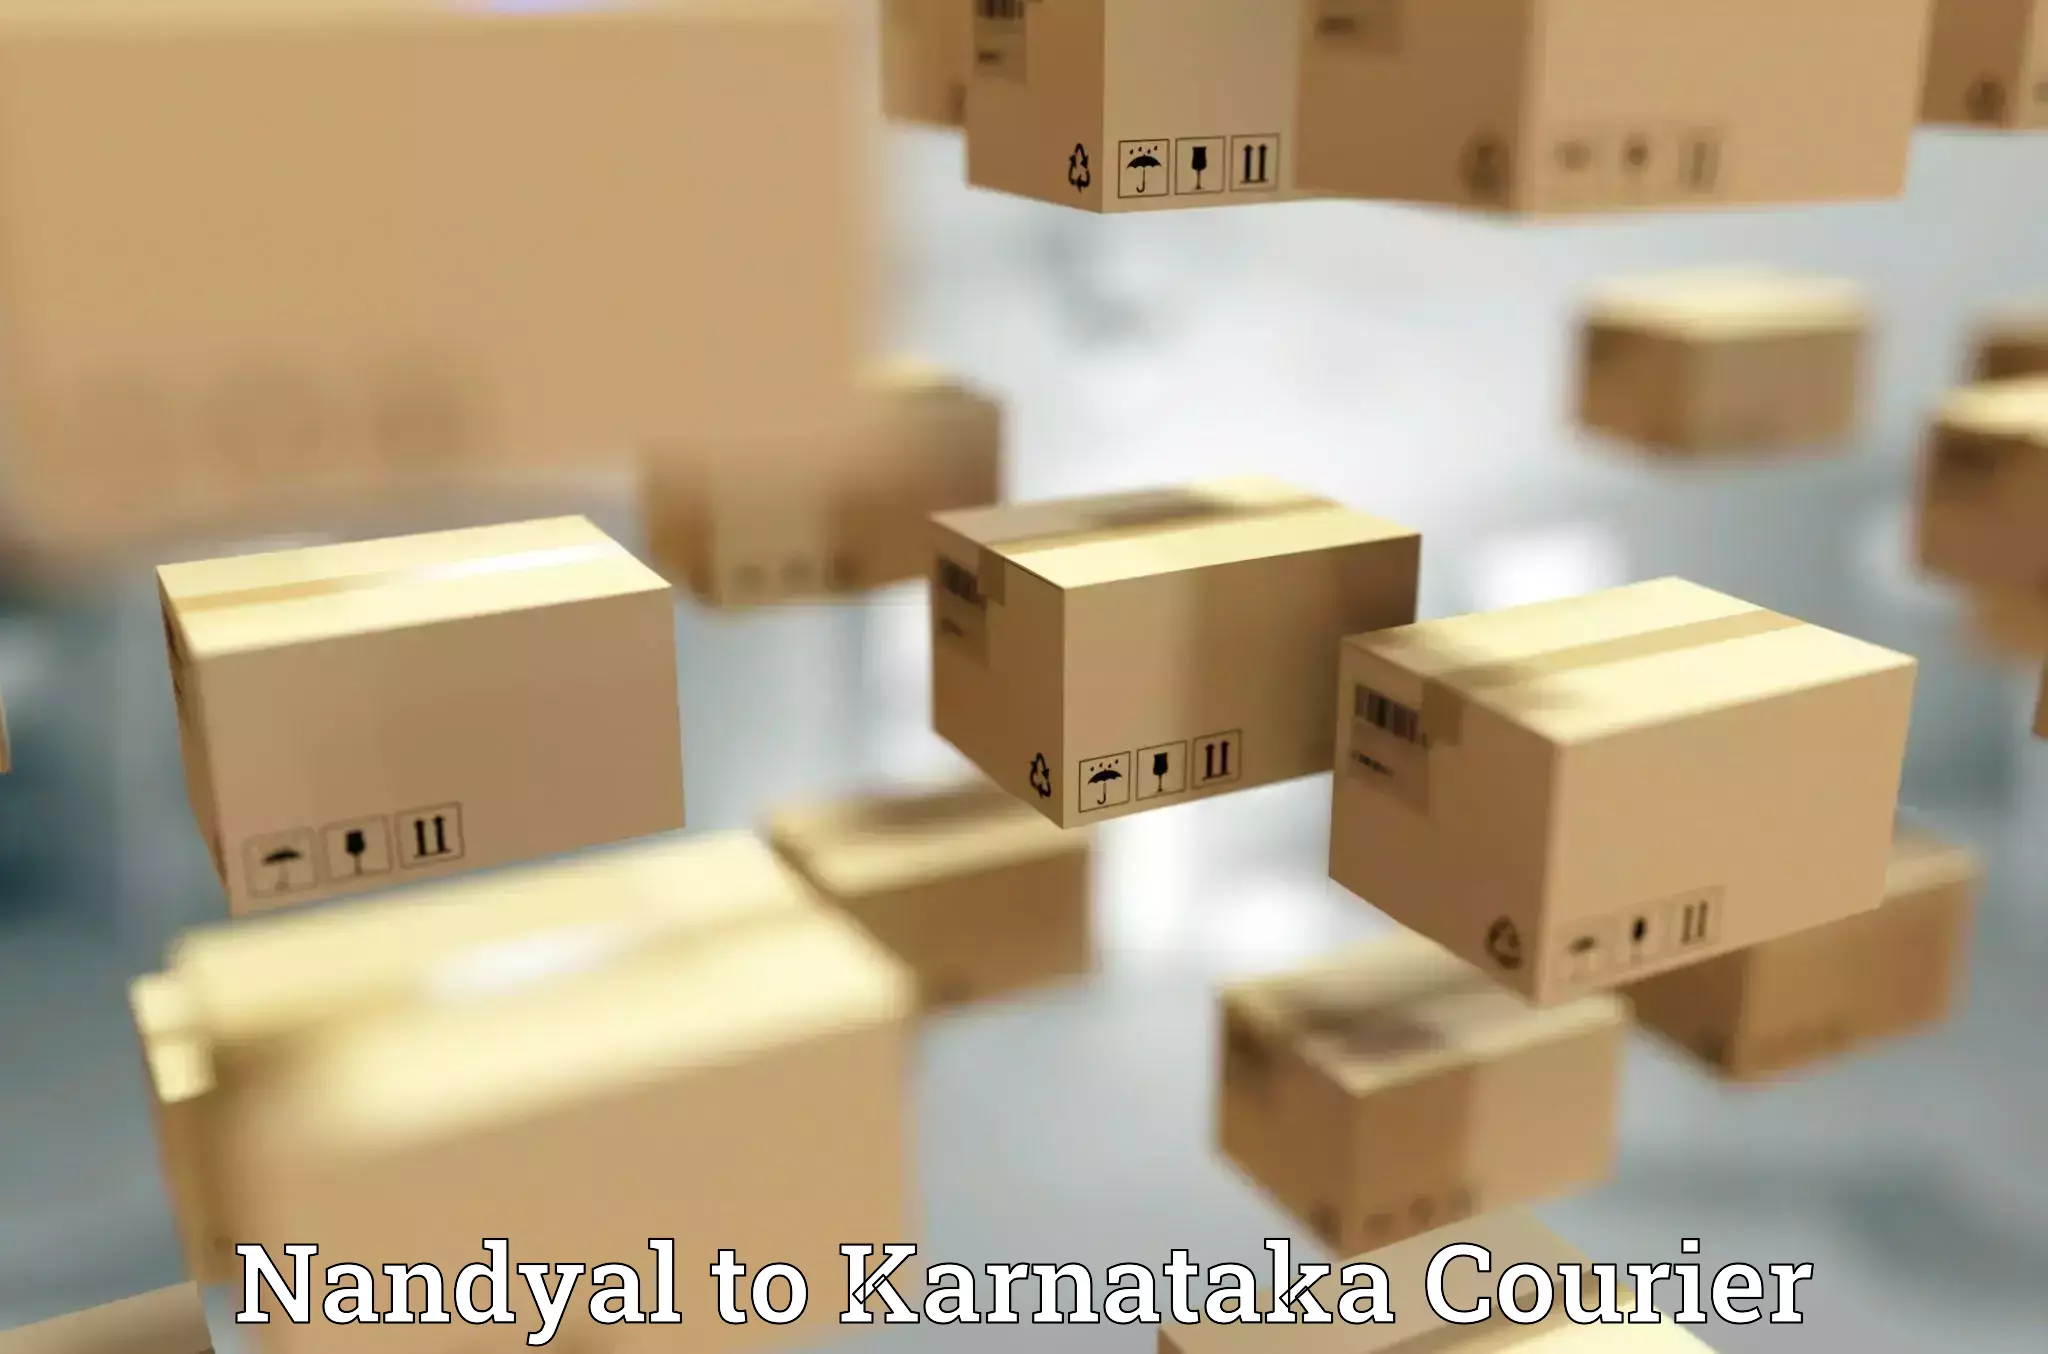 Global shipping networks Nandyal to Krishnarajanagara